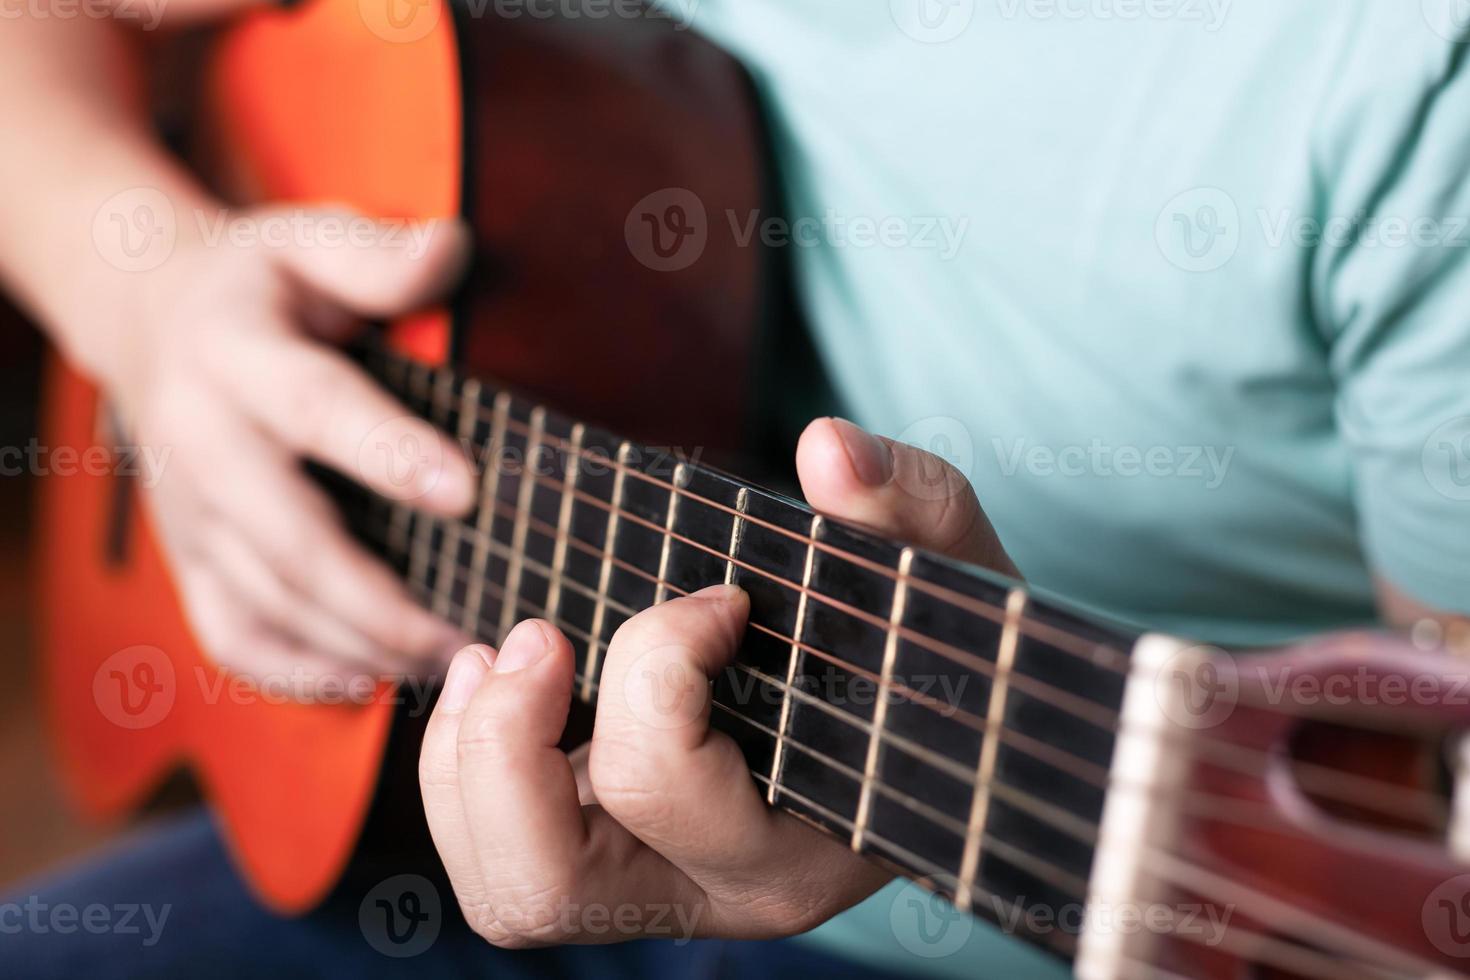 spelar akustisk gitarr närbild, hand griper ackordet, spelar ett musikinstrument foto